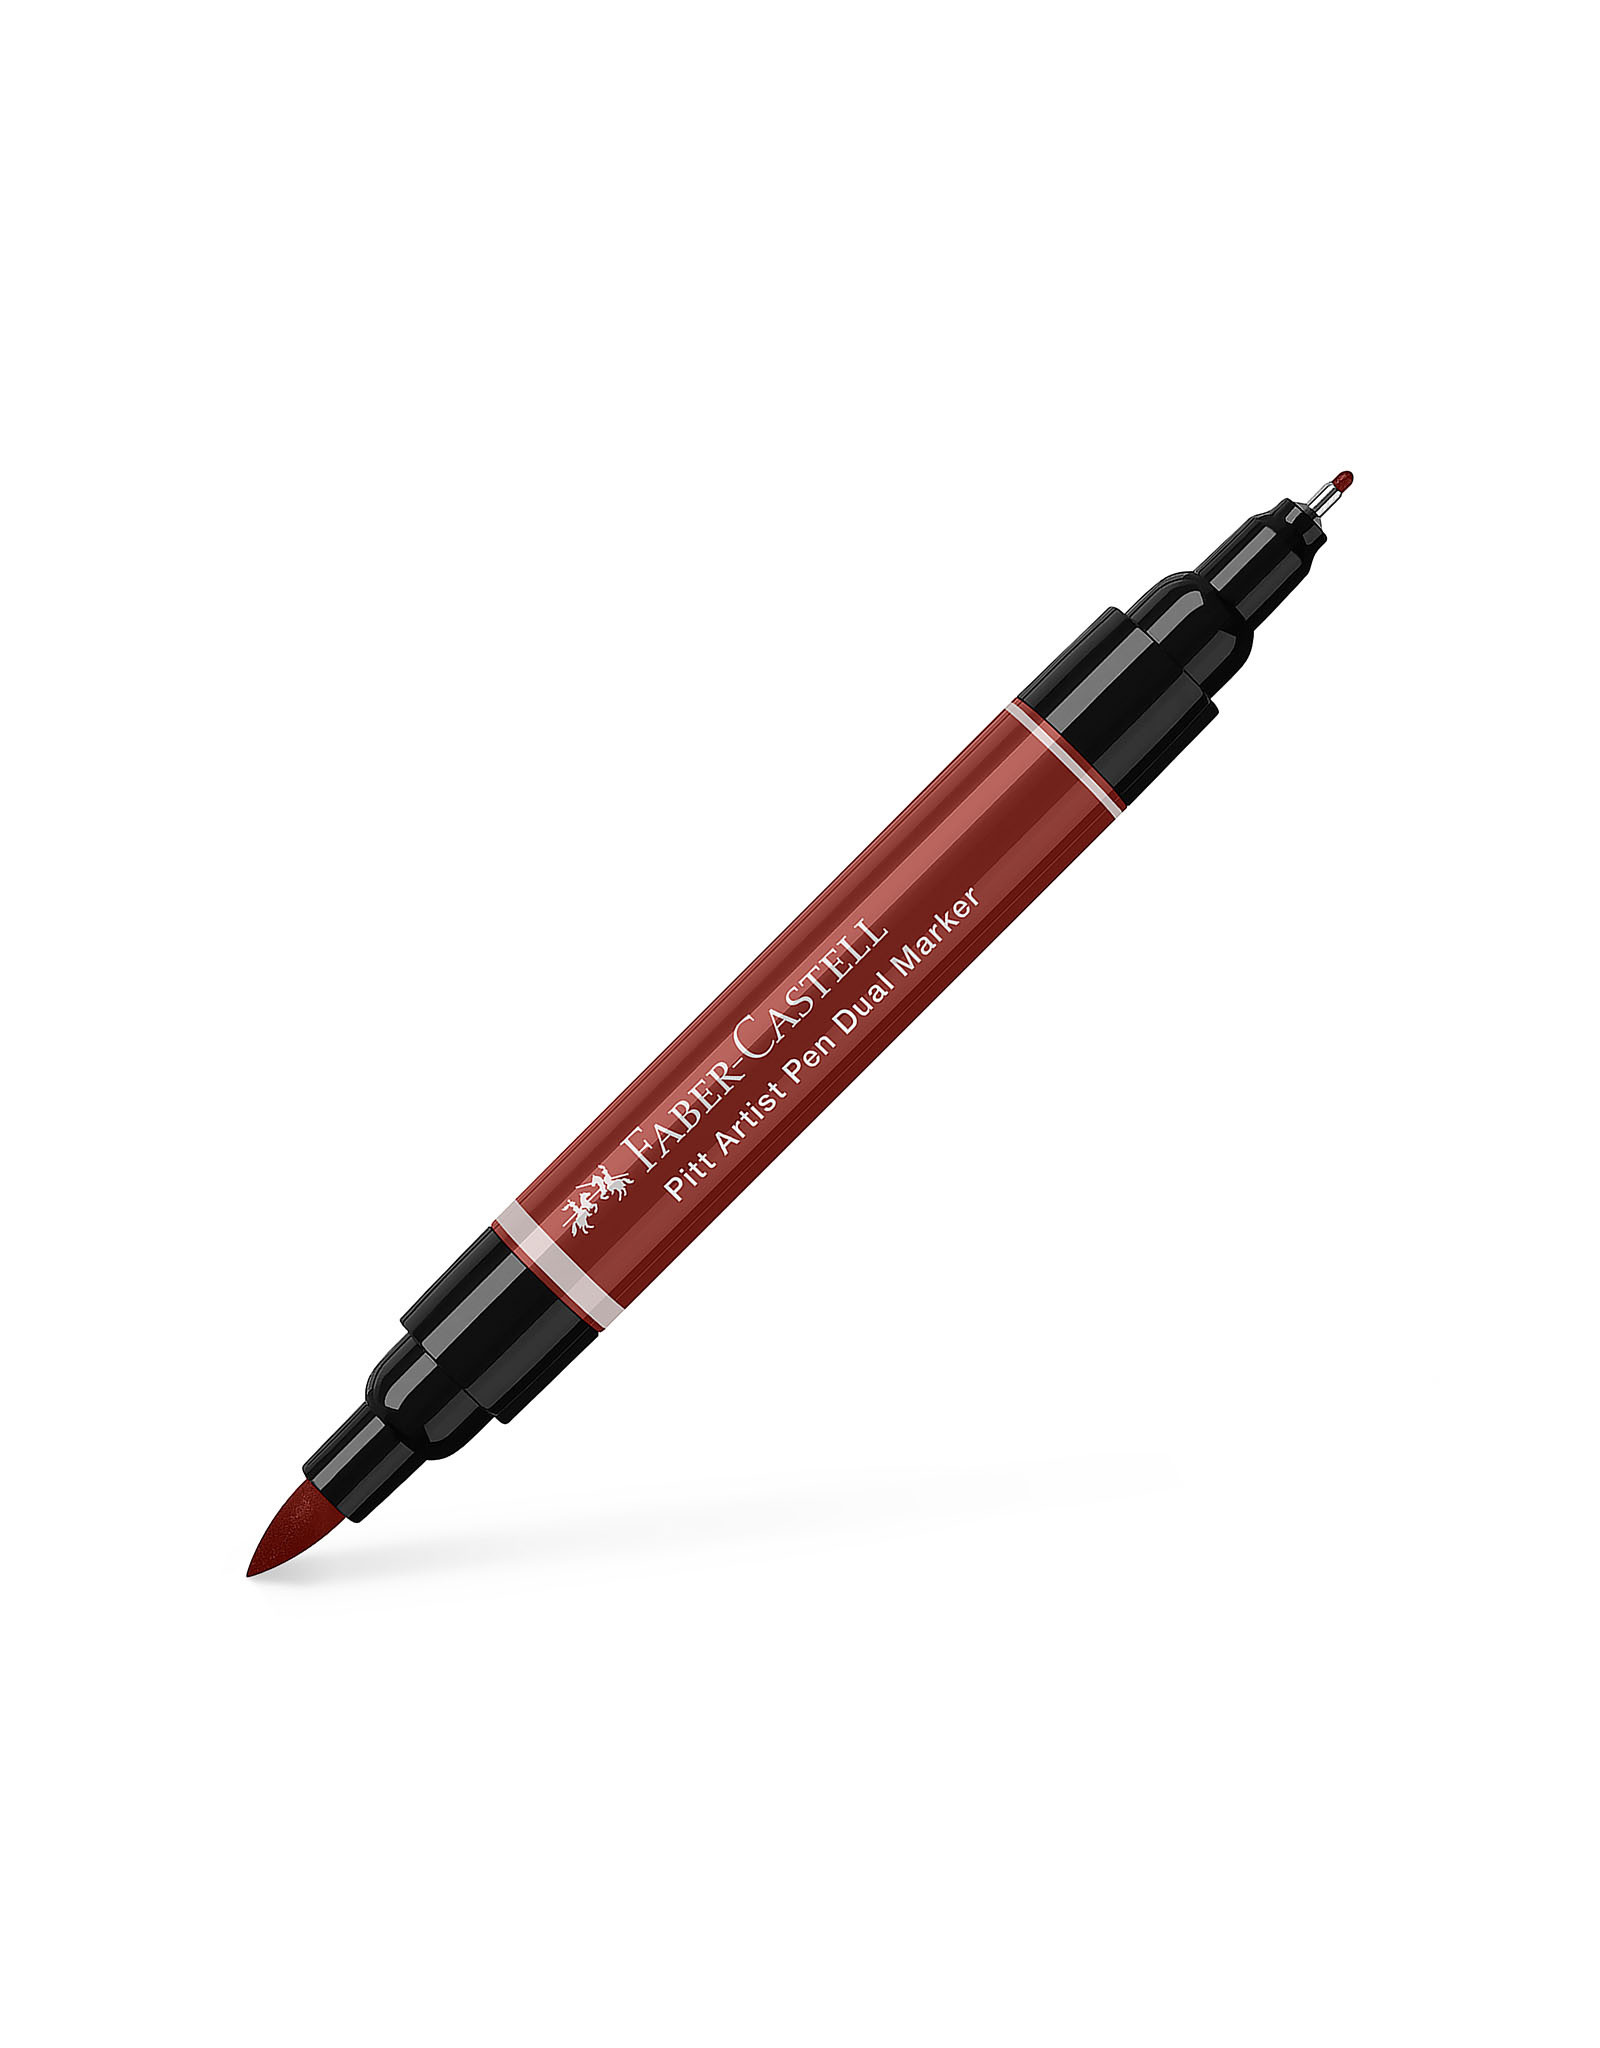 FABER-CASTELL Pitt Artist Pen Dual Tip Marker, India Red